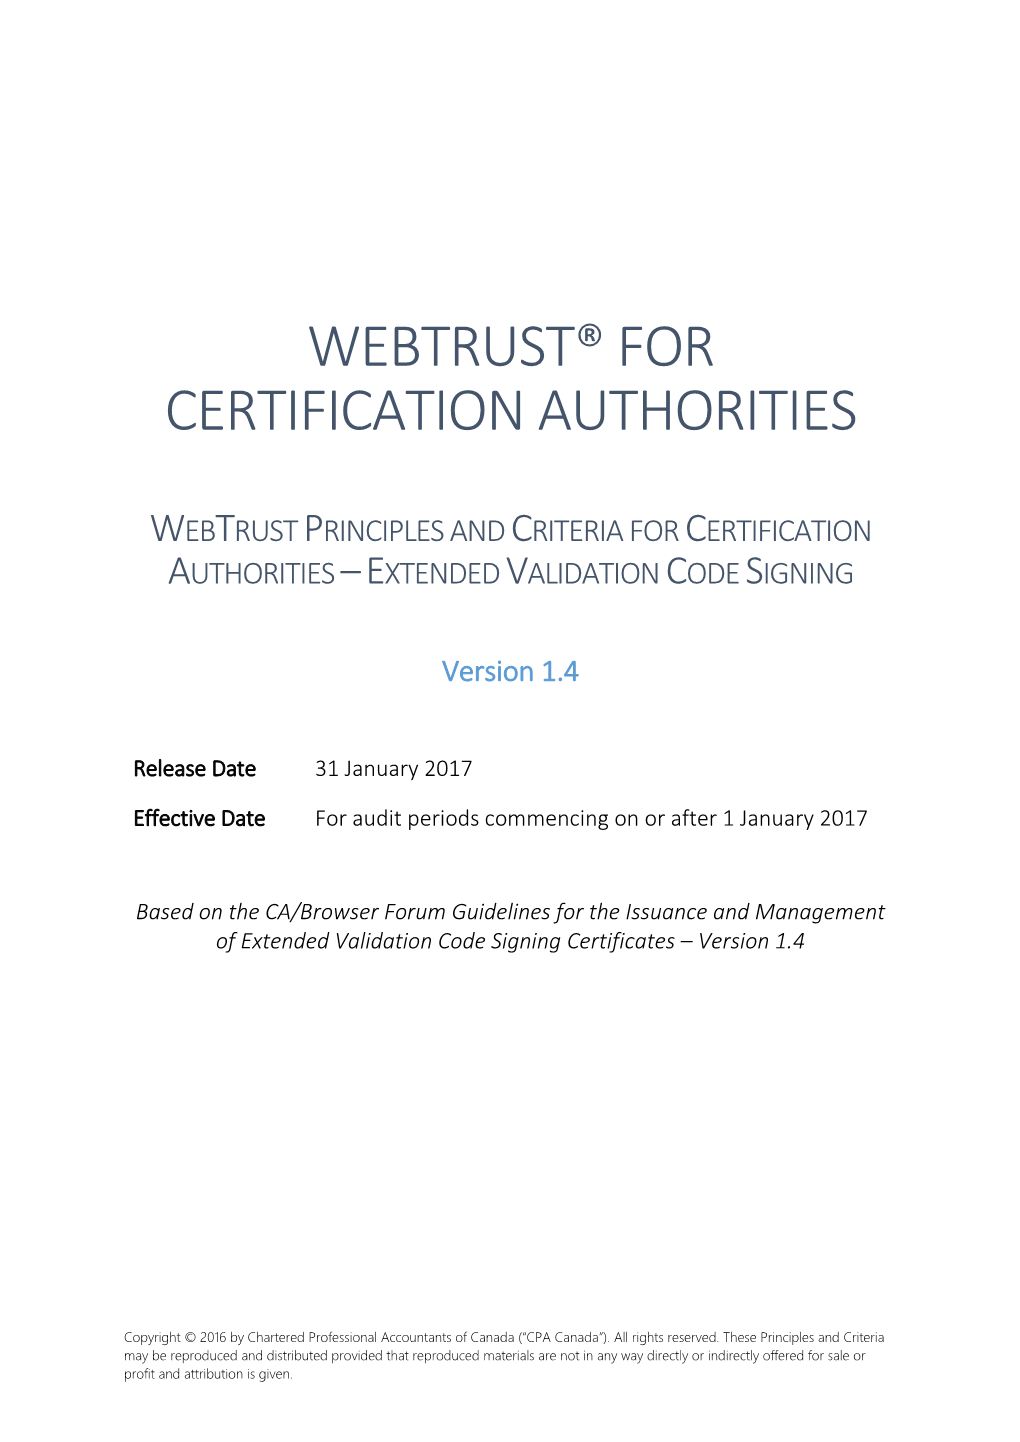 Webtrust® for Certification Authorities